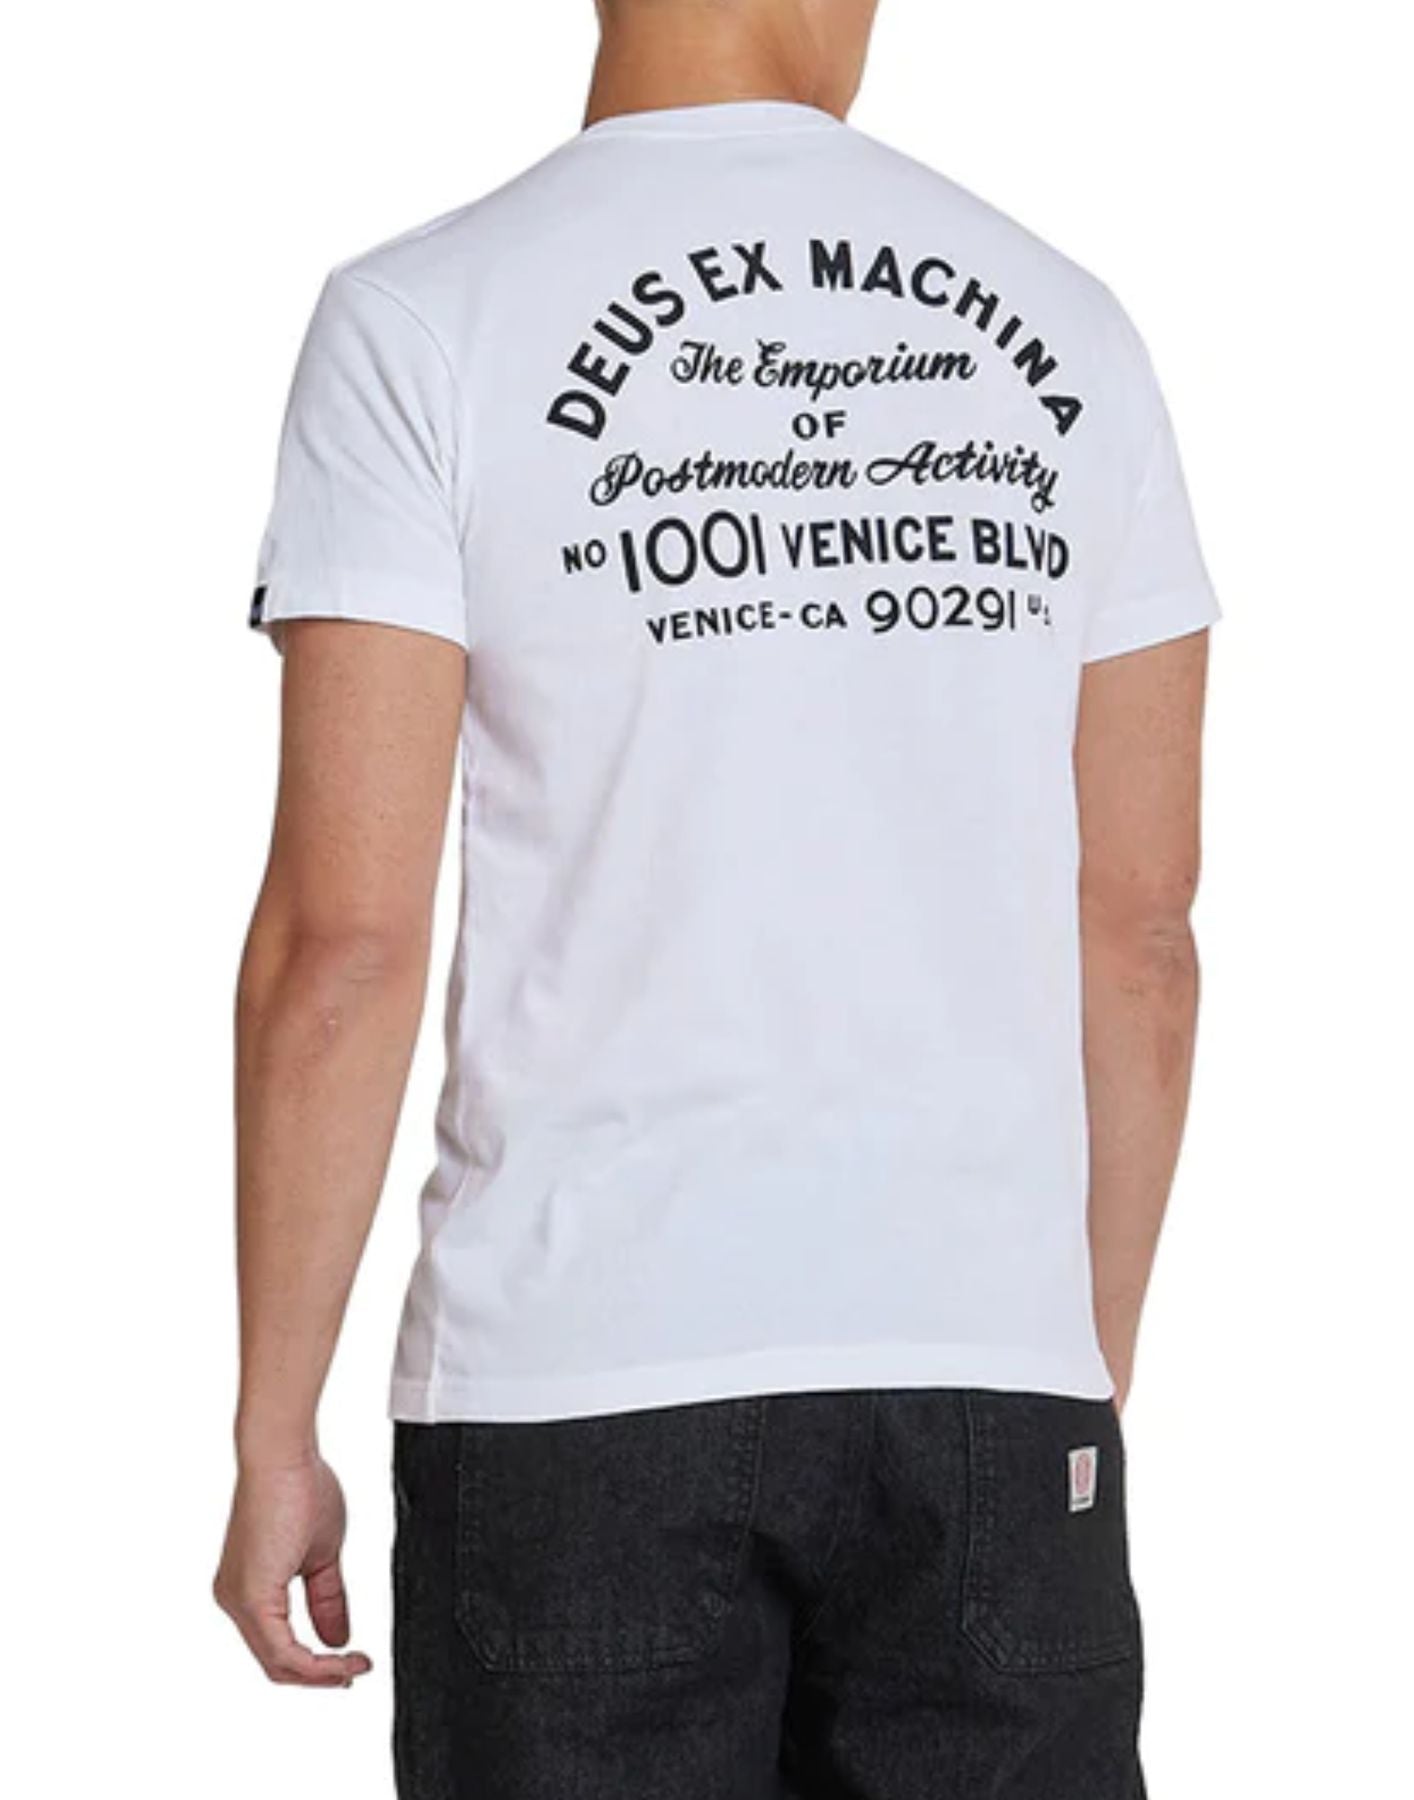 T-Shirt für Mann DMS41065A Venice Weiß Deus Ex Machina